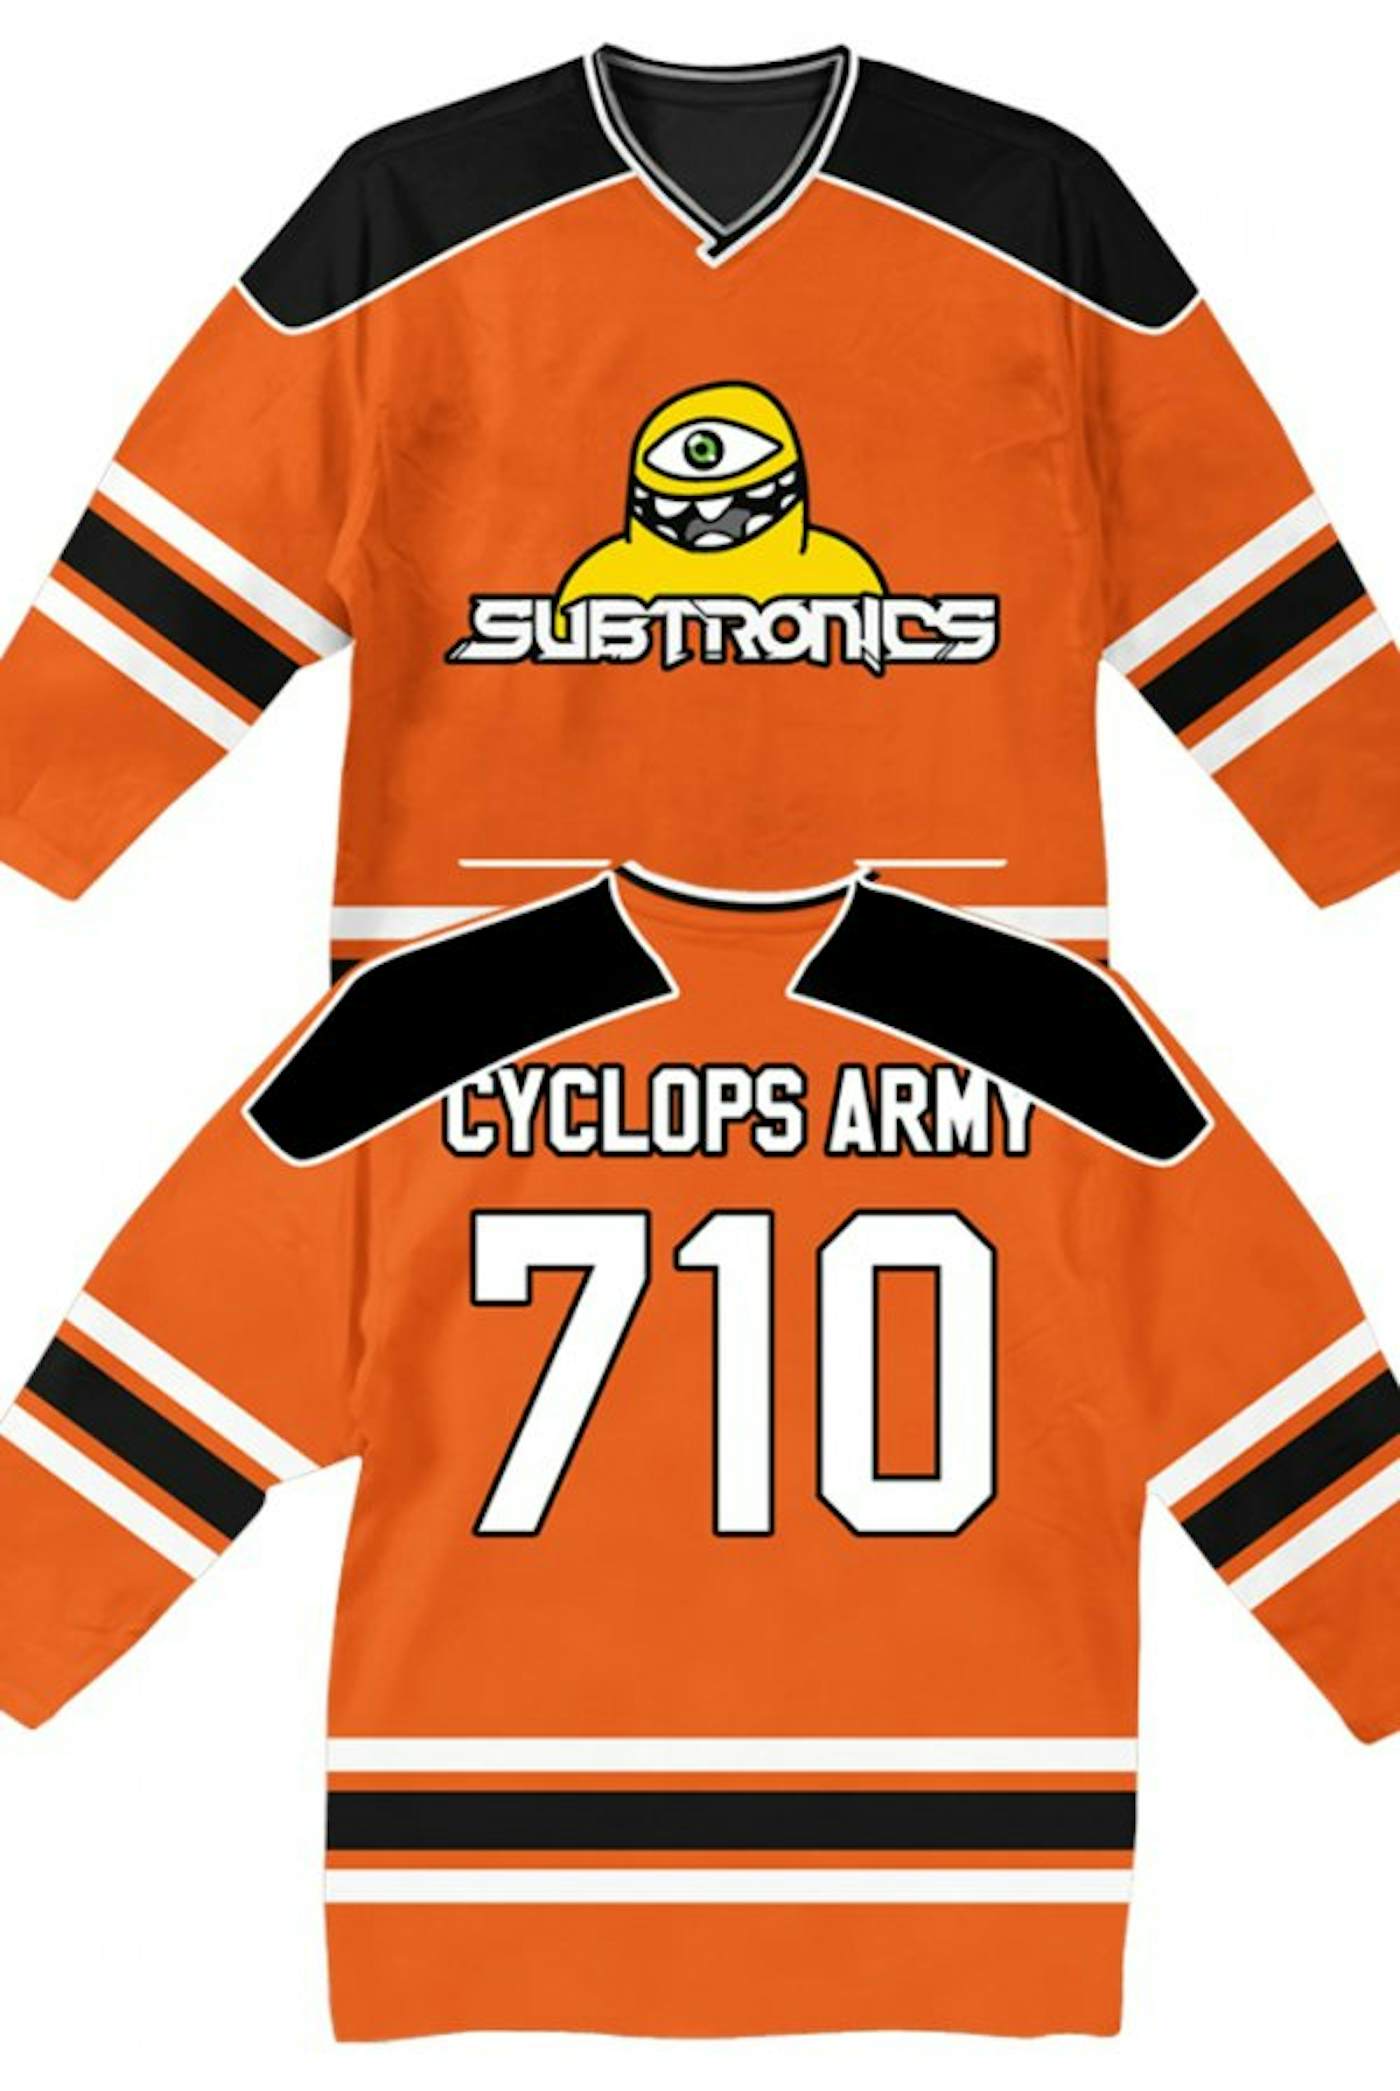 SUBTRONICS Cyclops Army Crop Top Jersey